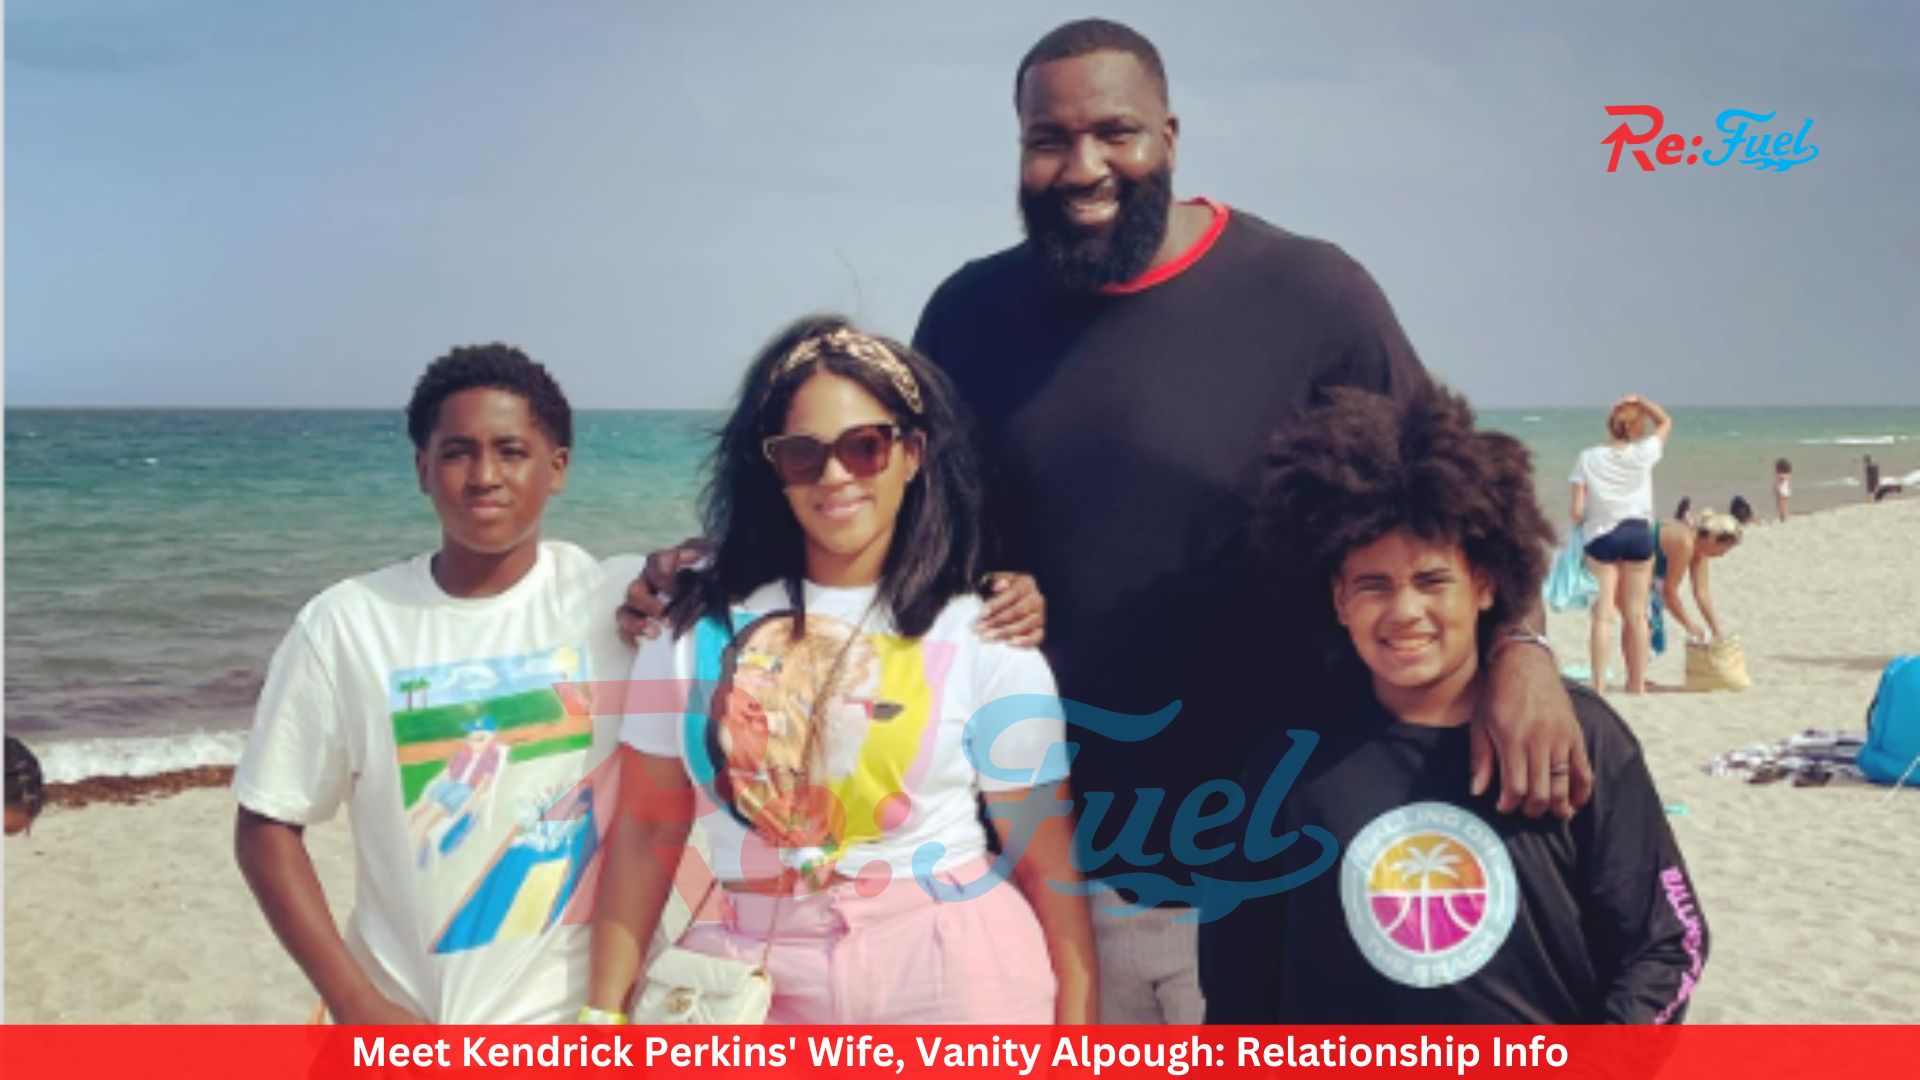 Meet Kendrick Perkins' Wife, Vanity Alpough: Relationship Info